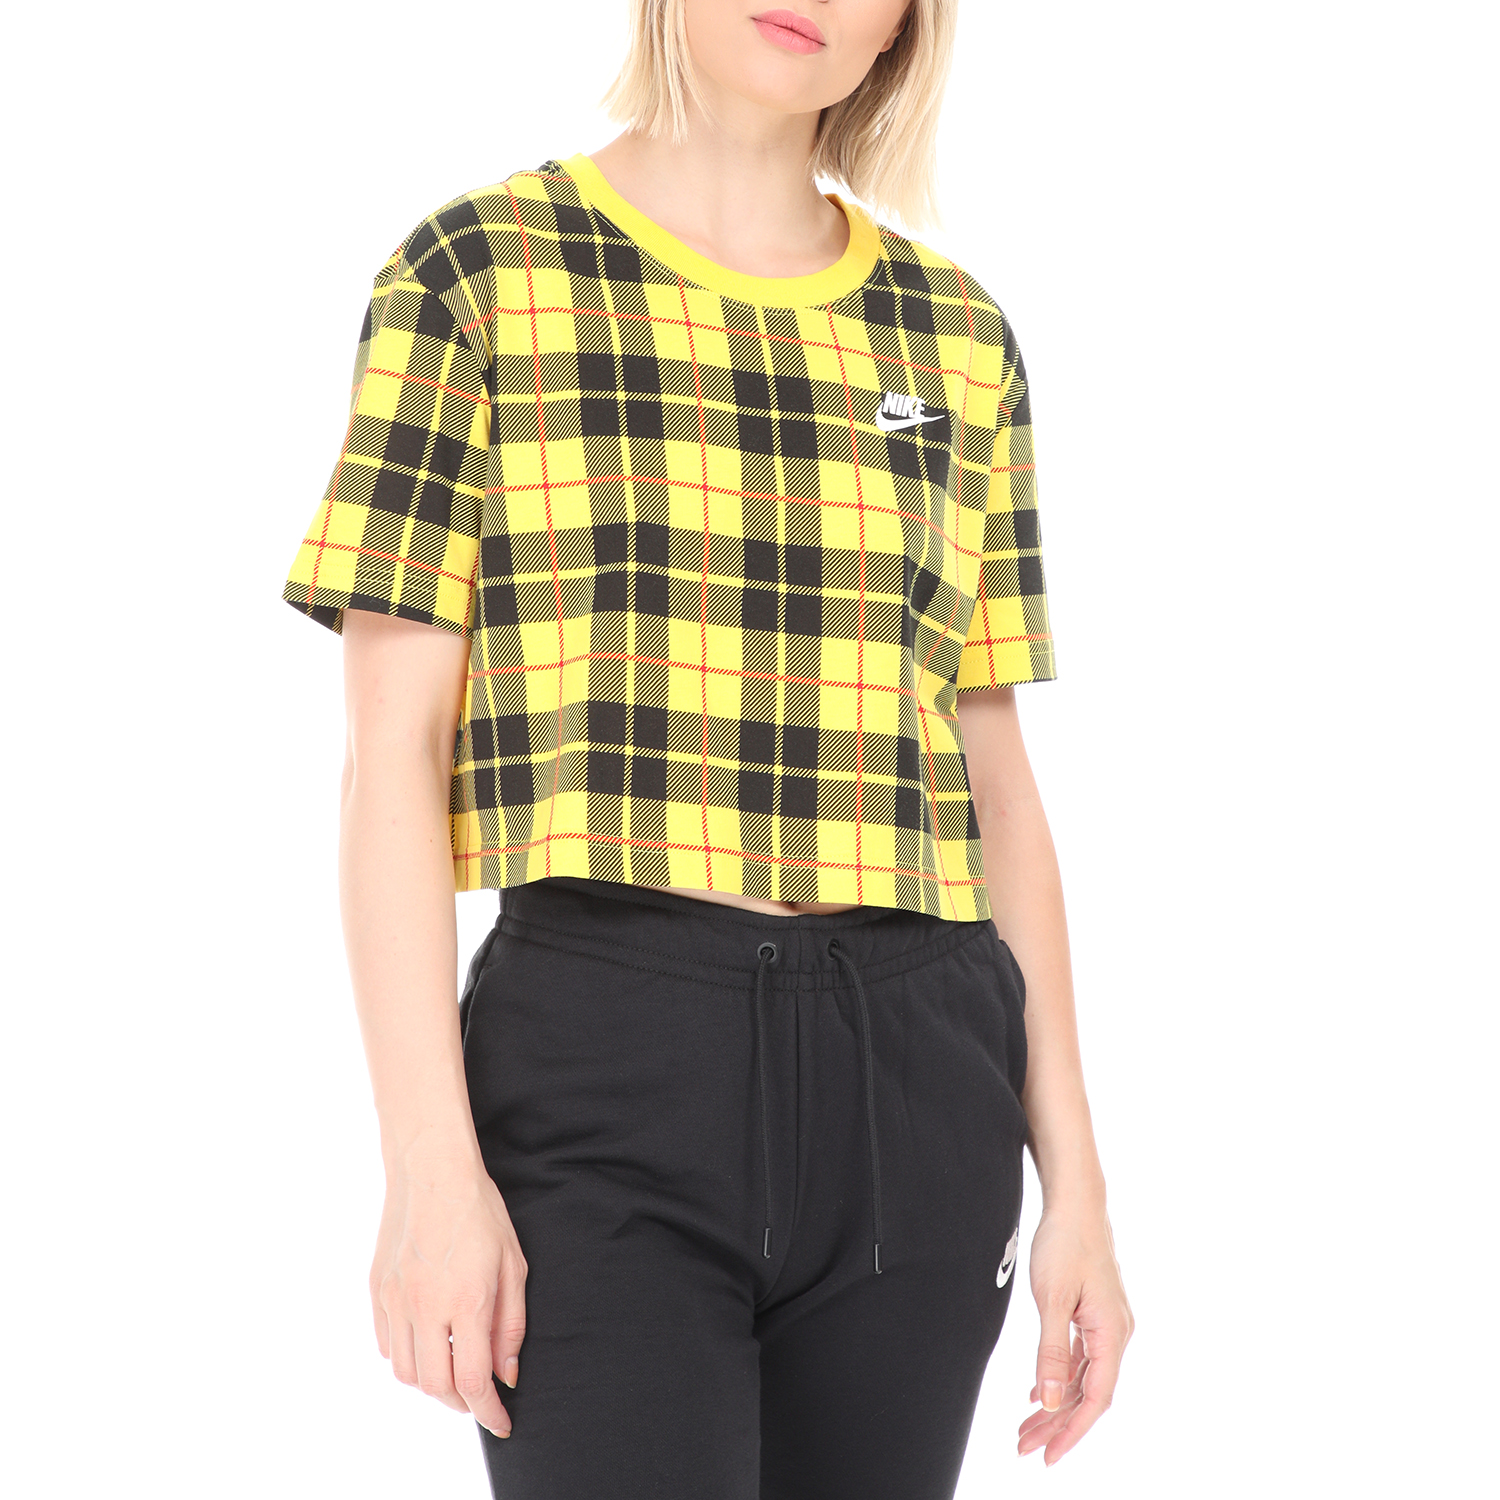 Γυναικεία/Ρούχα/Αθλητικά/T-shirt-Τοπ NIKE - Γυναικείο t-shirt ΝΙΚΕ NSW TEE FUTURA PLAID CROP κίτρινο μαύρο